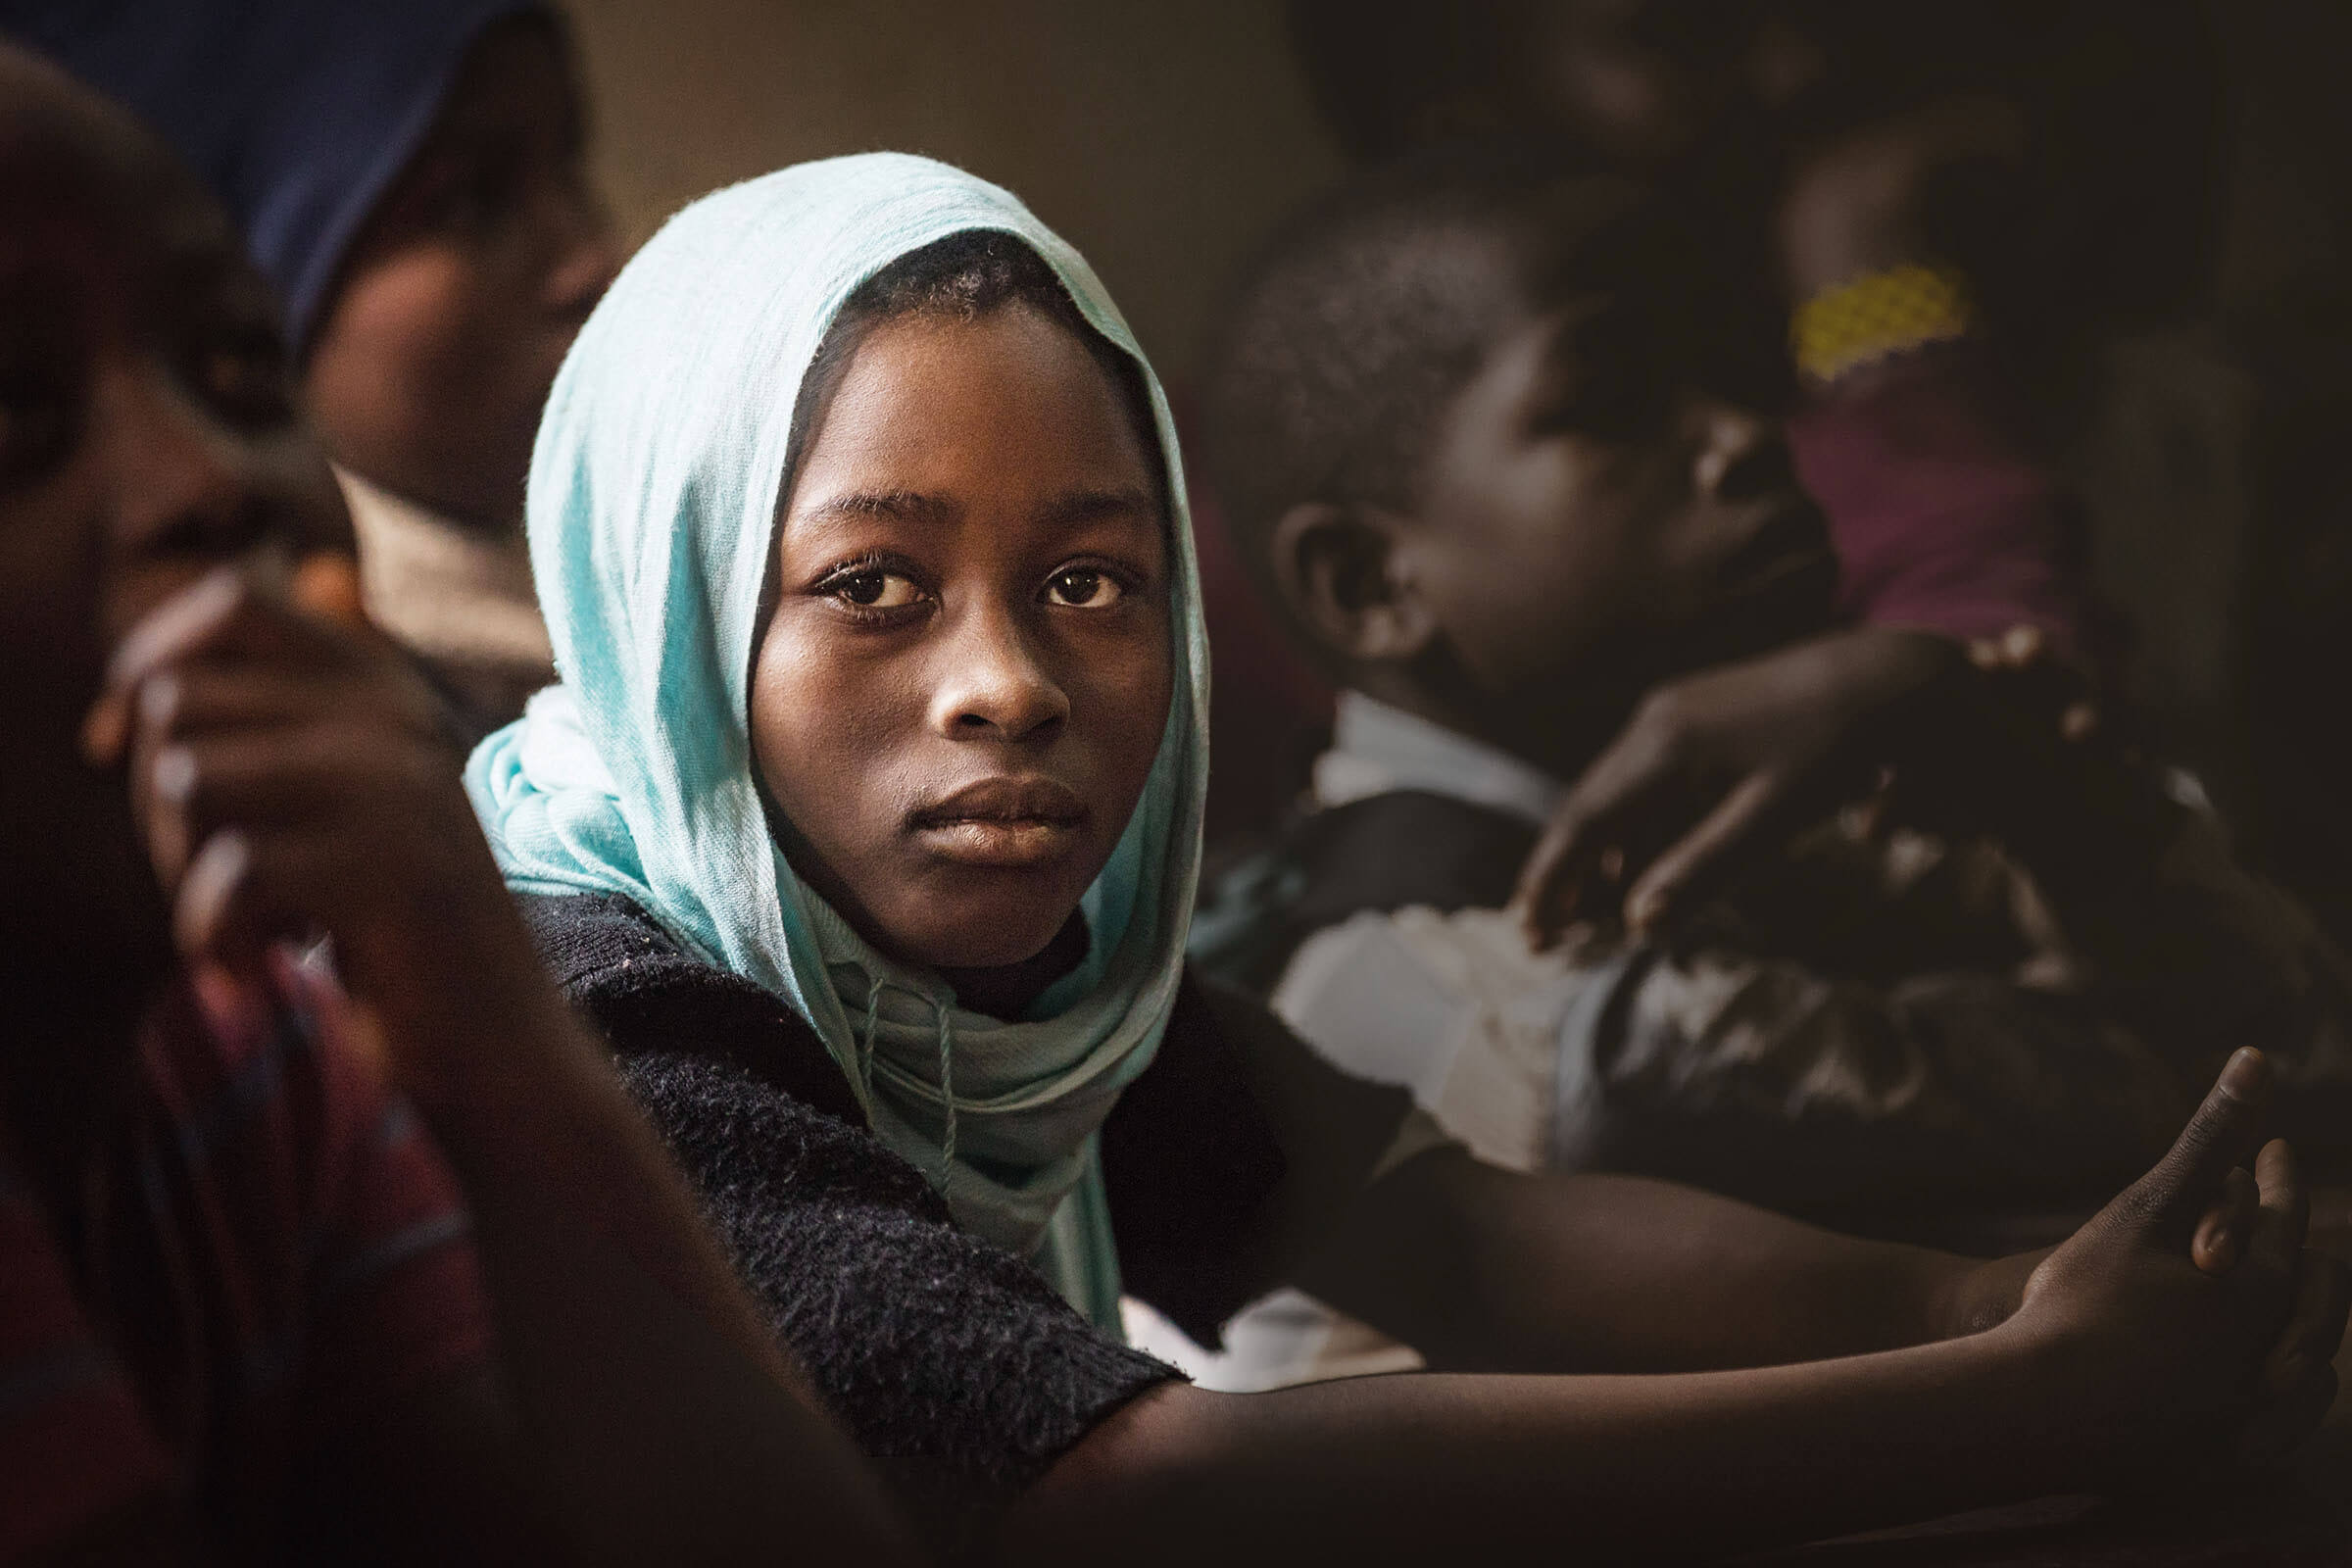 Ein afrikanisches Mädchen mit Kopftuch schaut nachdenklich in die Kamera. (Quelle: Lars Heidrich)